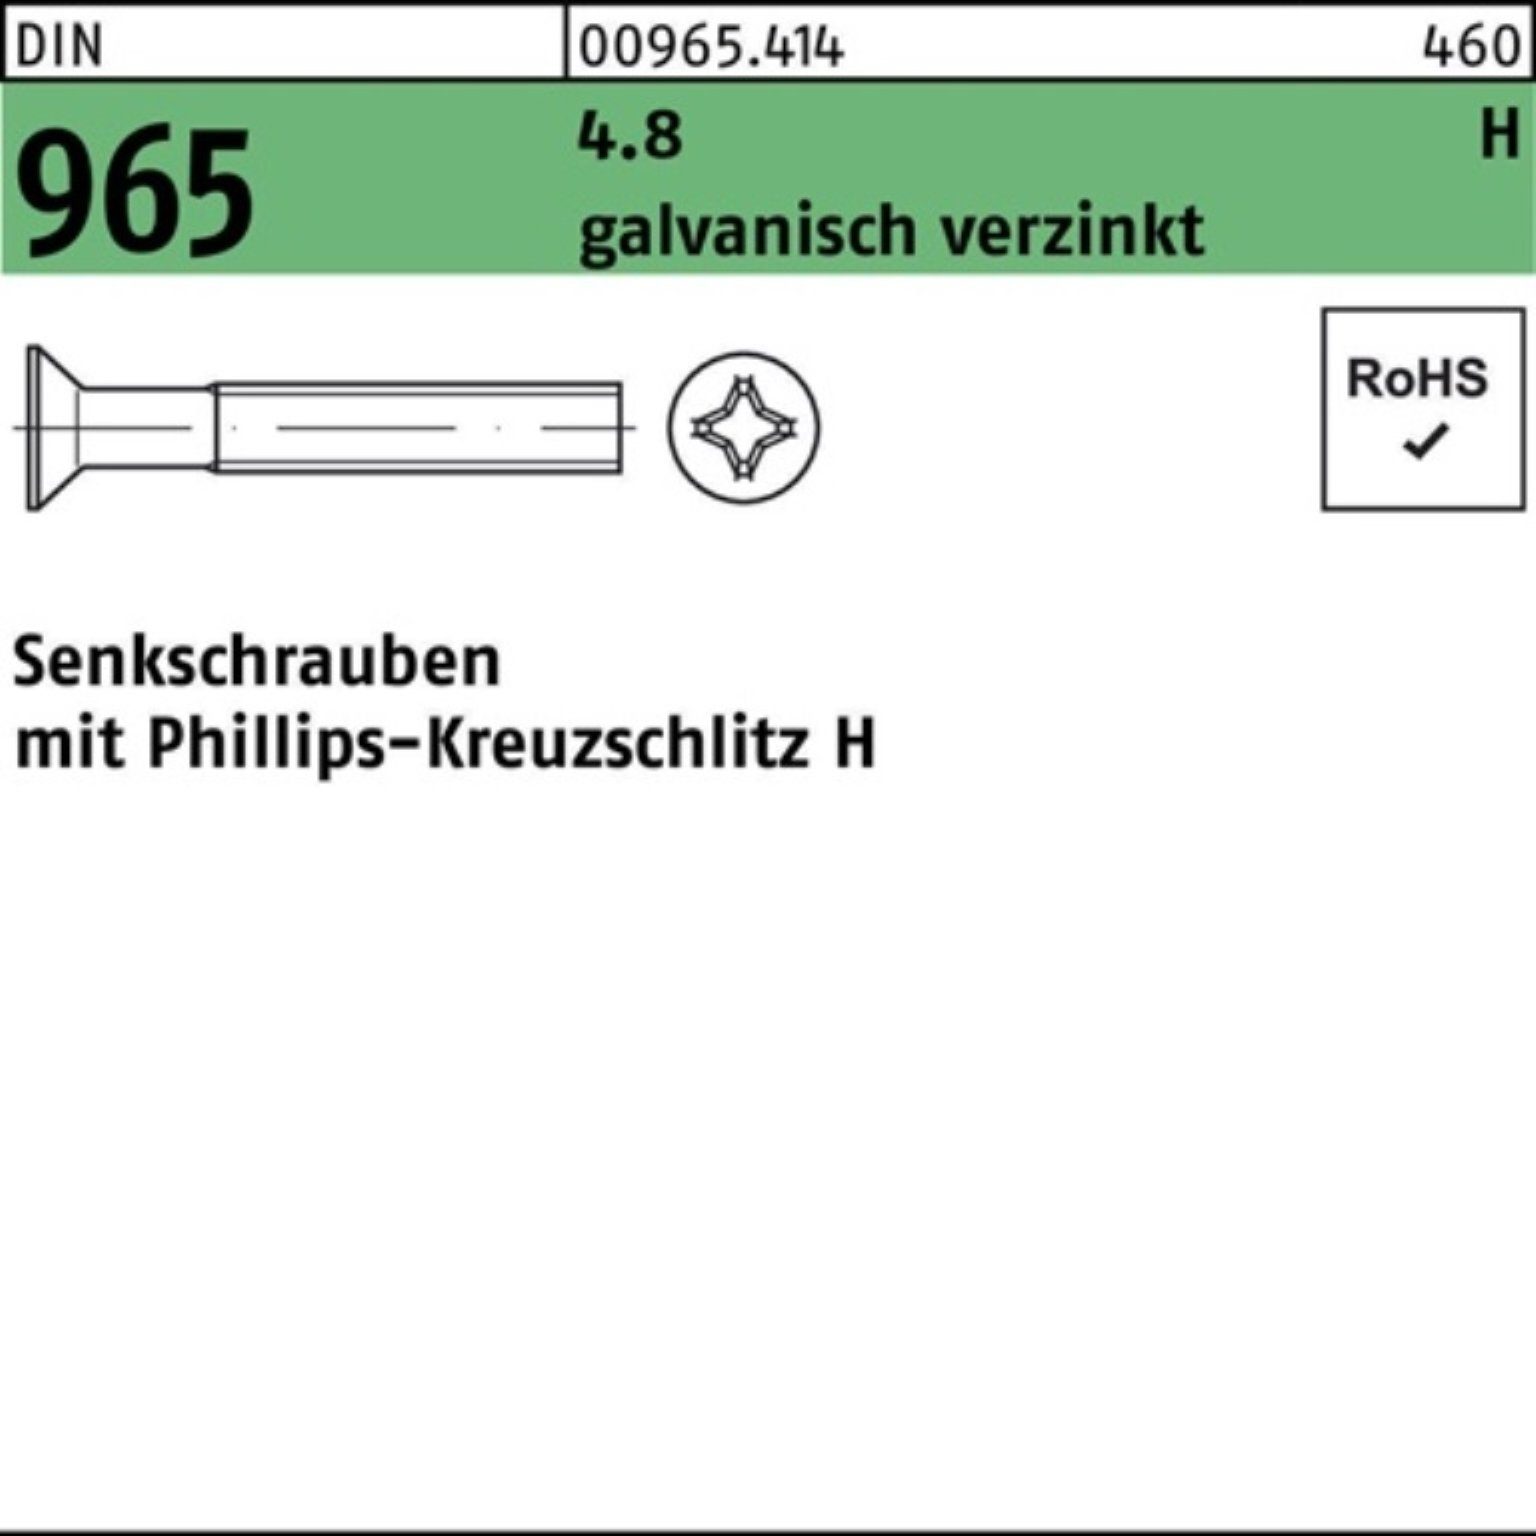 galv.verz. Senkschraube DIN Senkschraube Pack 20-H 965 DIN 4.8 Reyher PH M3x 200St. 200er